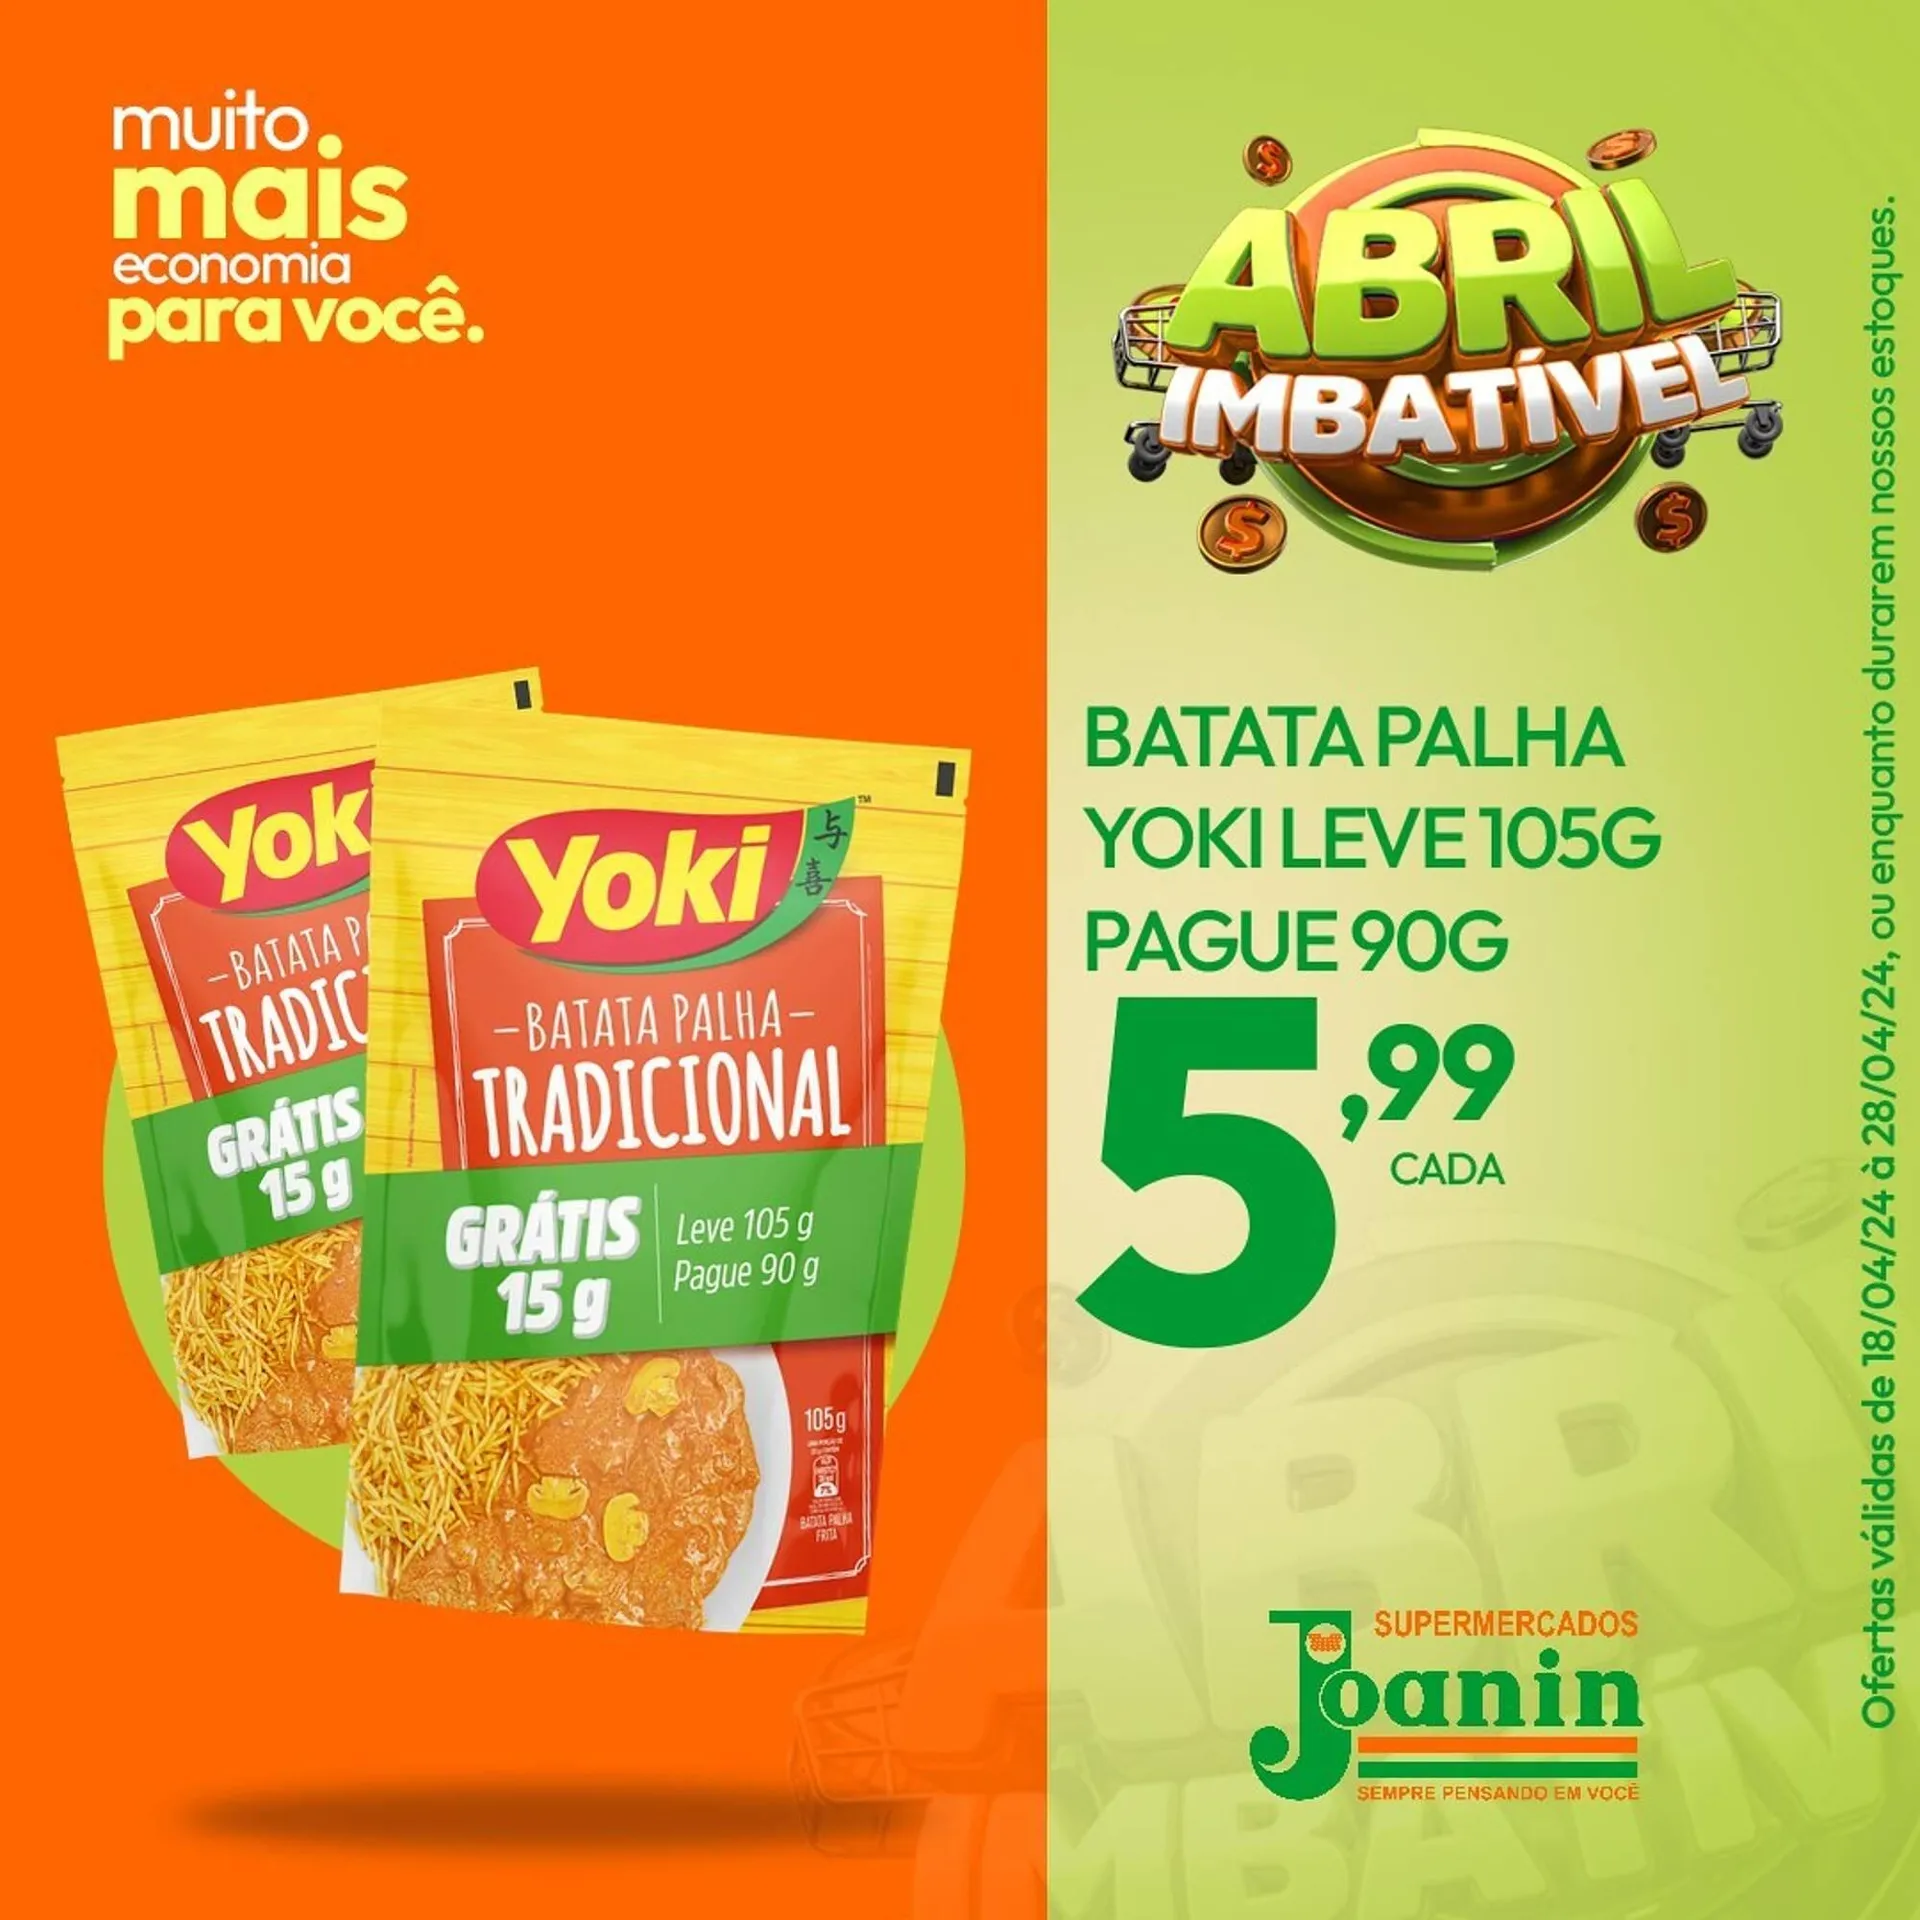 Catálogo Supermercados Joanin - 3